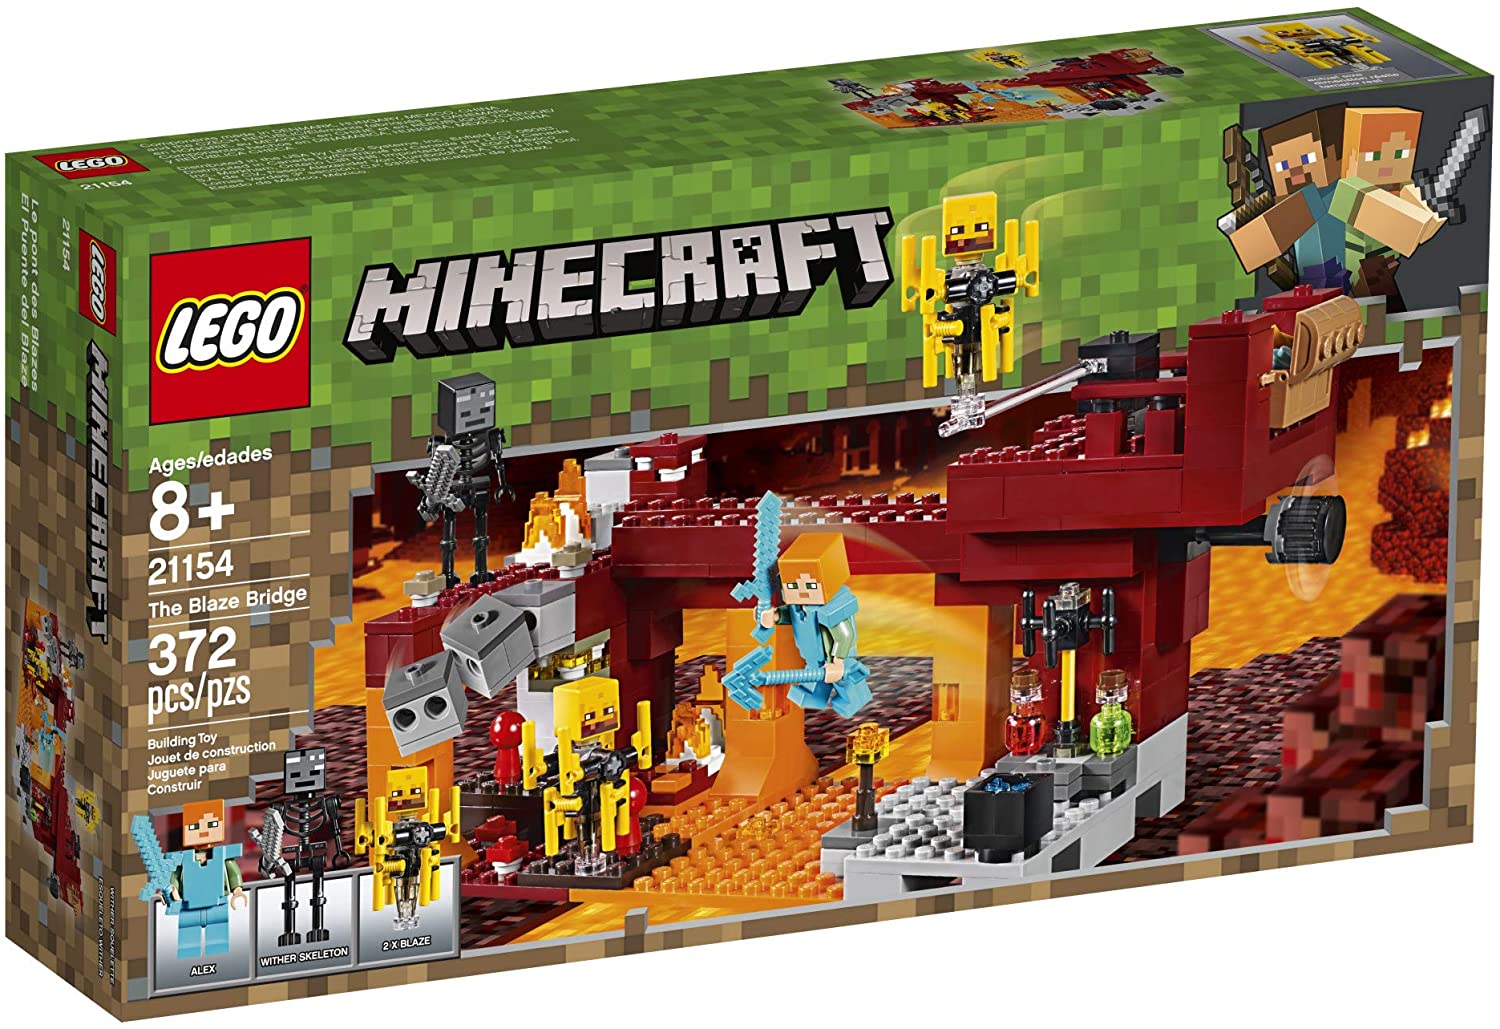 Minecraft Lego Blaze Bridge Reco